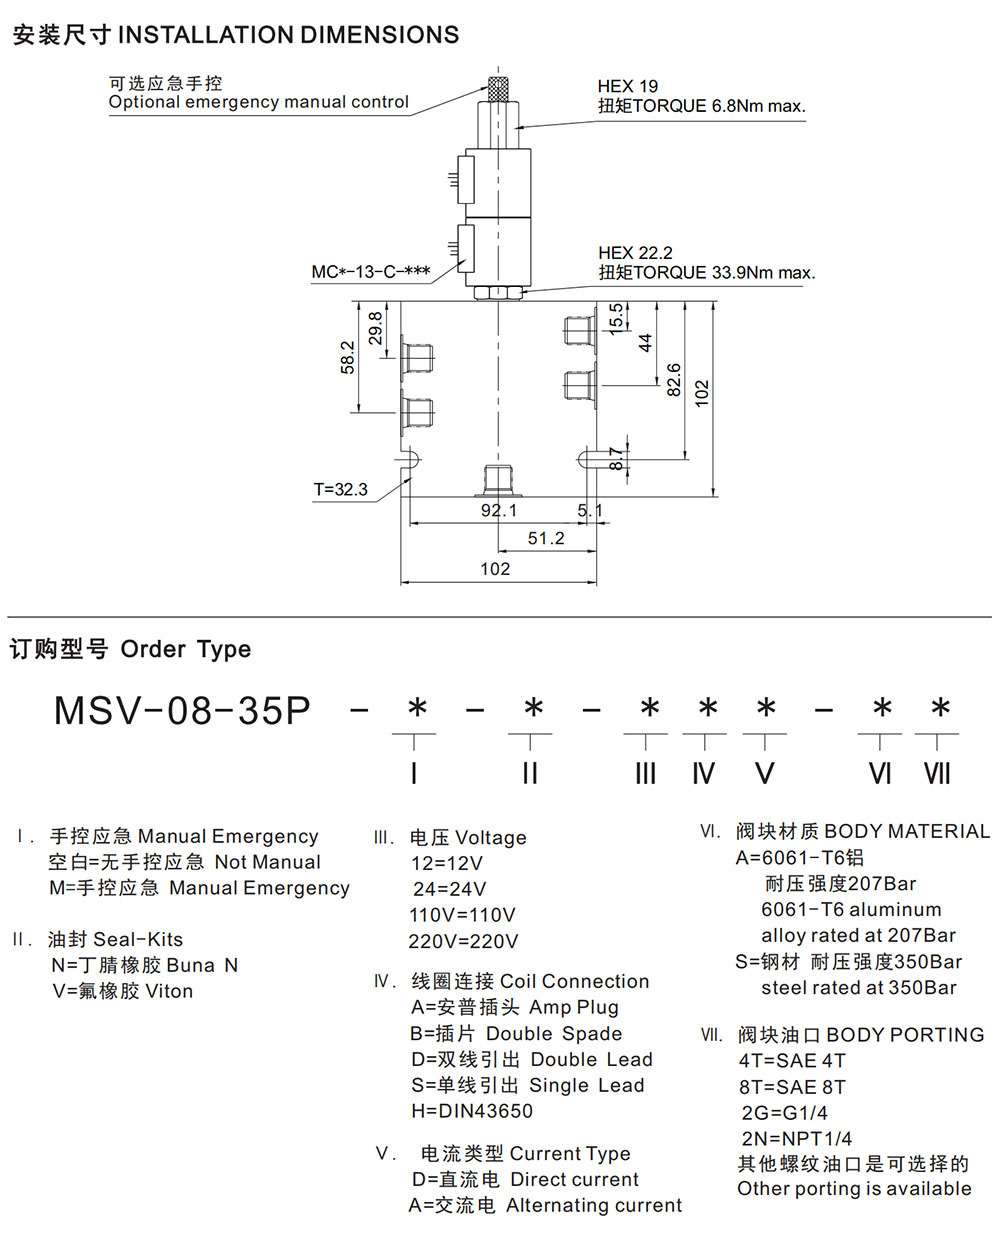 MSV-08-35P